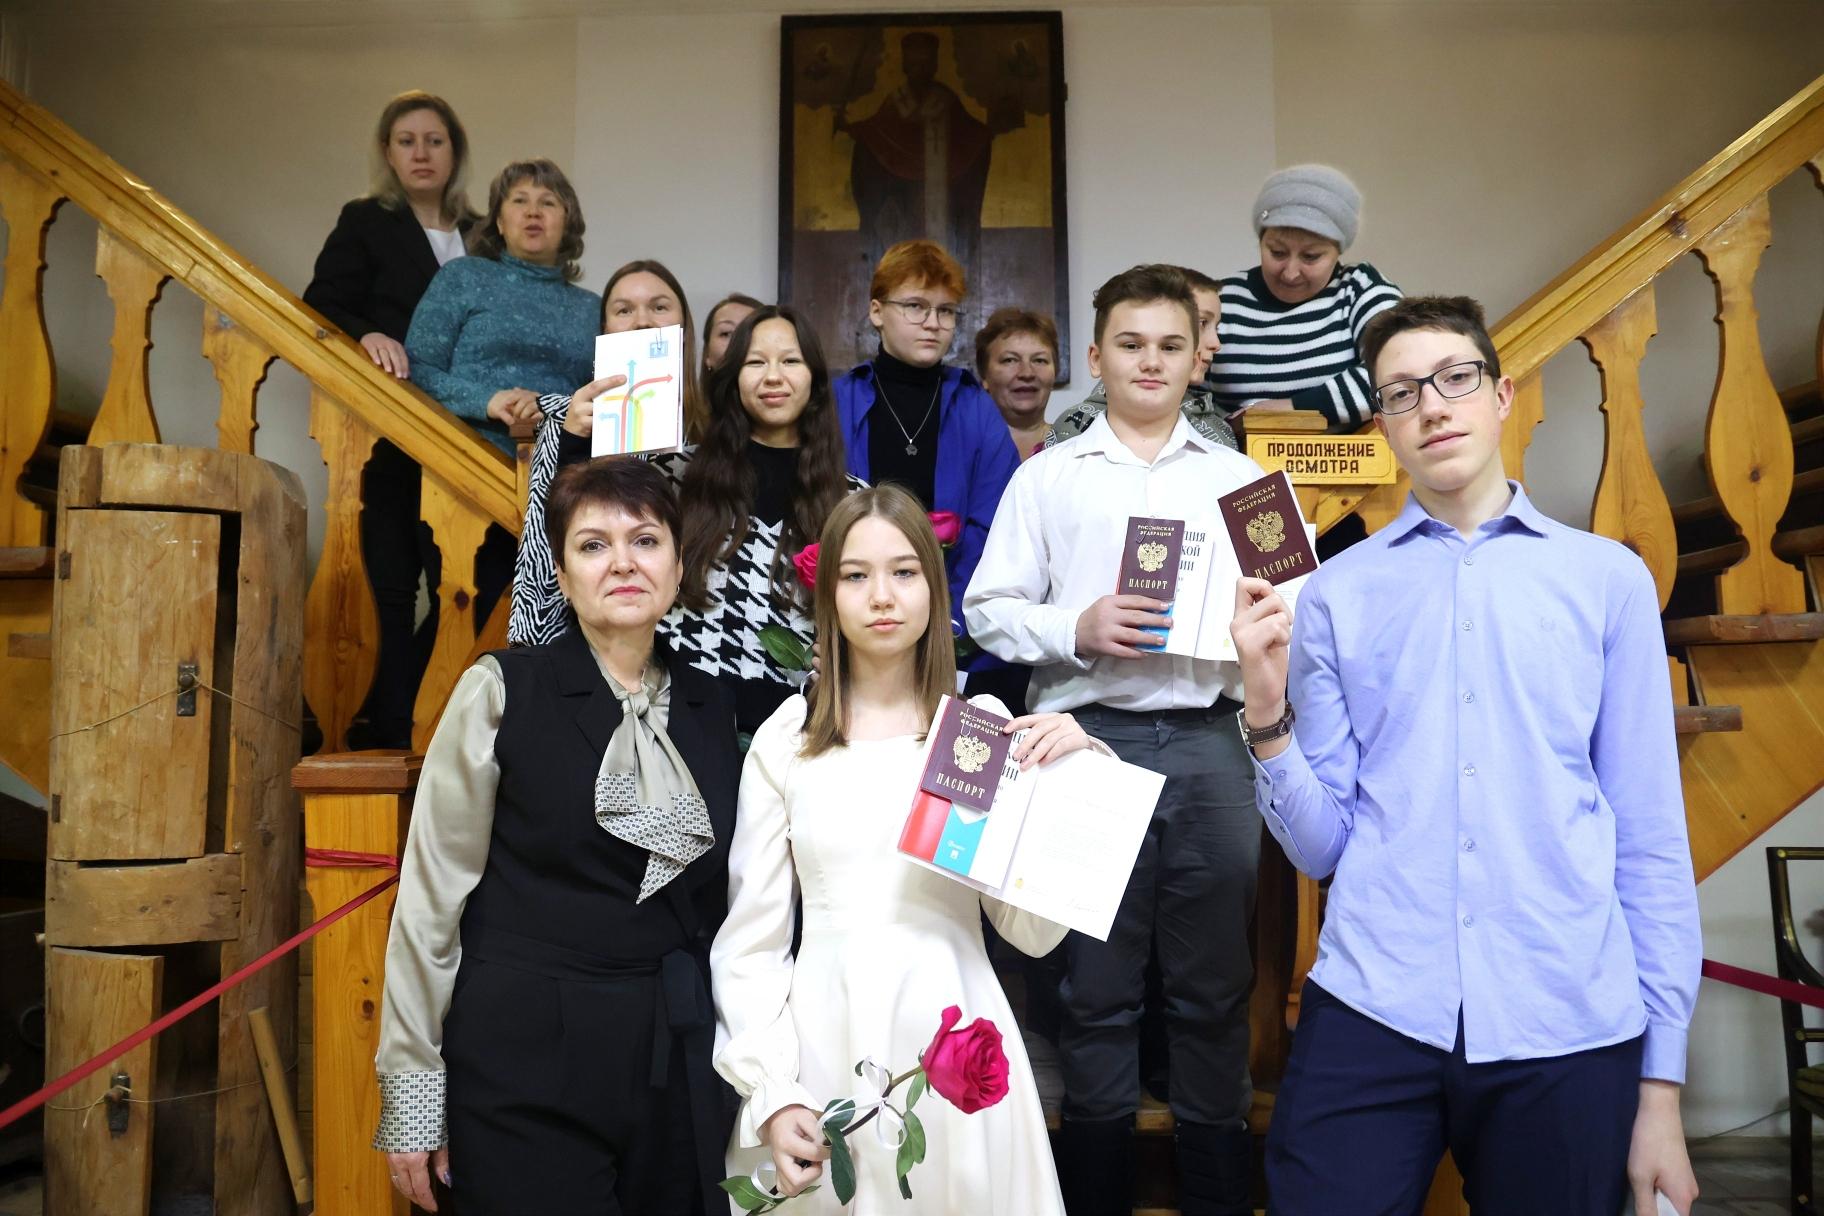 Шаг во взрослую жизнь: юные жители Волоколамска в торжественной обстановке получили свой первый паспорт